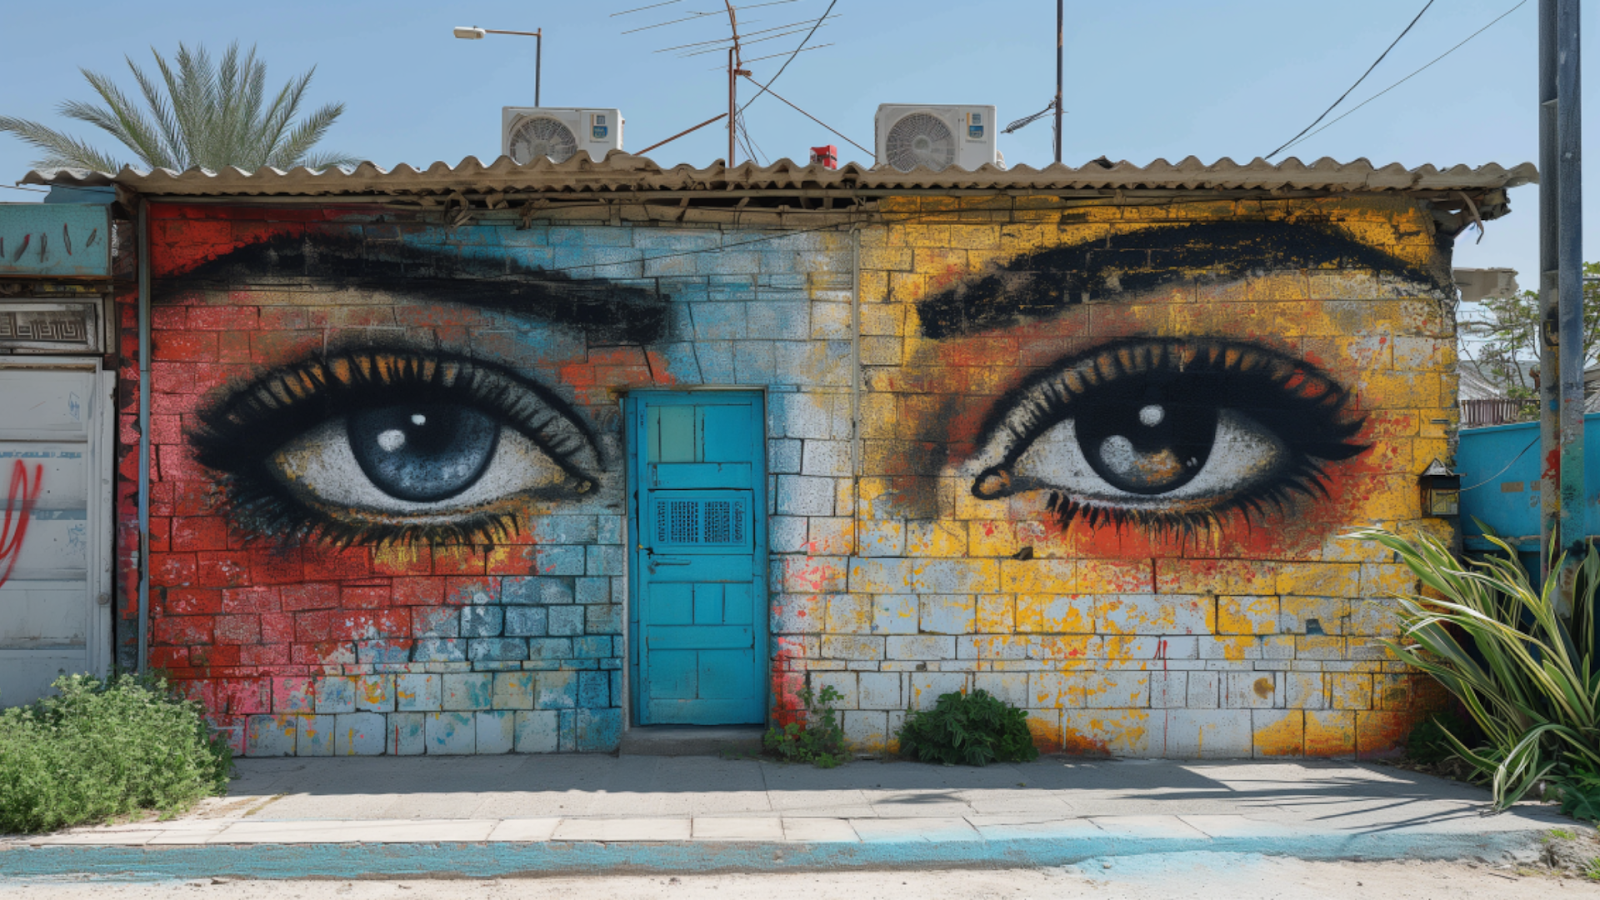 Colorful street art in the Florentin neighborhood, showcasing Tel Aviv's vibrant artistic scene.